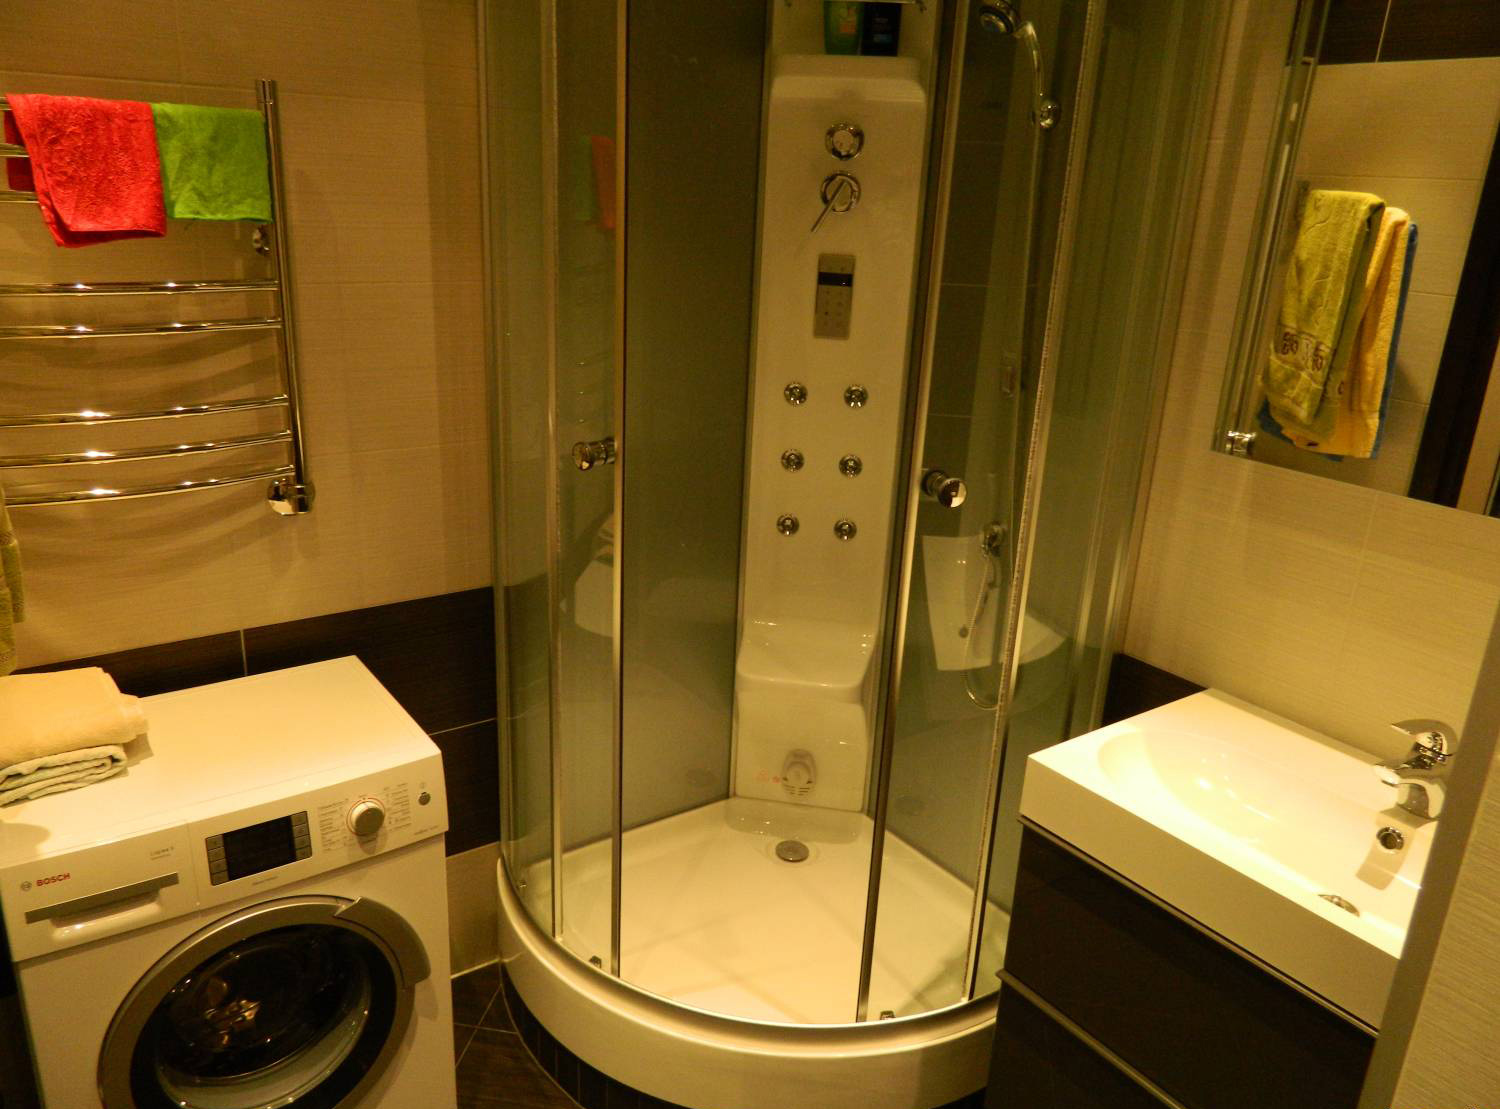 Ванная комната 3 кв метра: 100+ реальных фото примеров и идей оформления